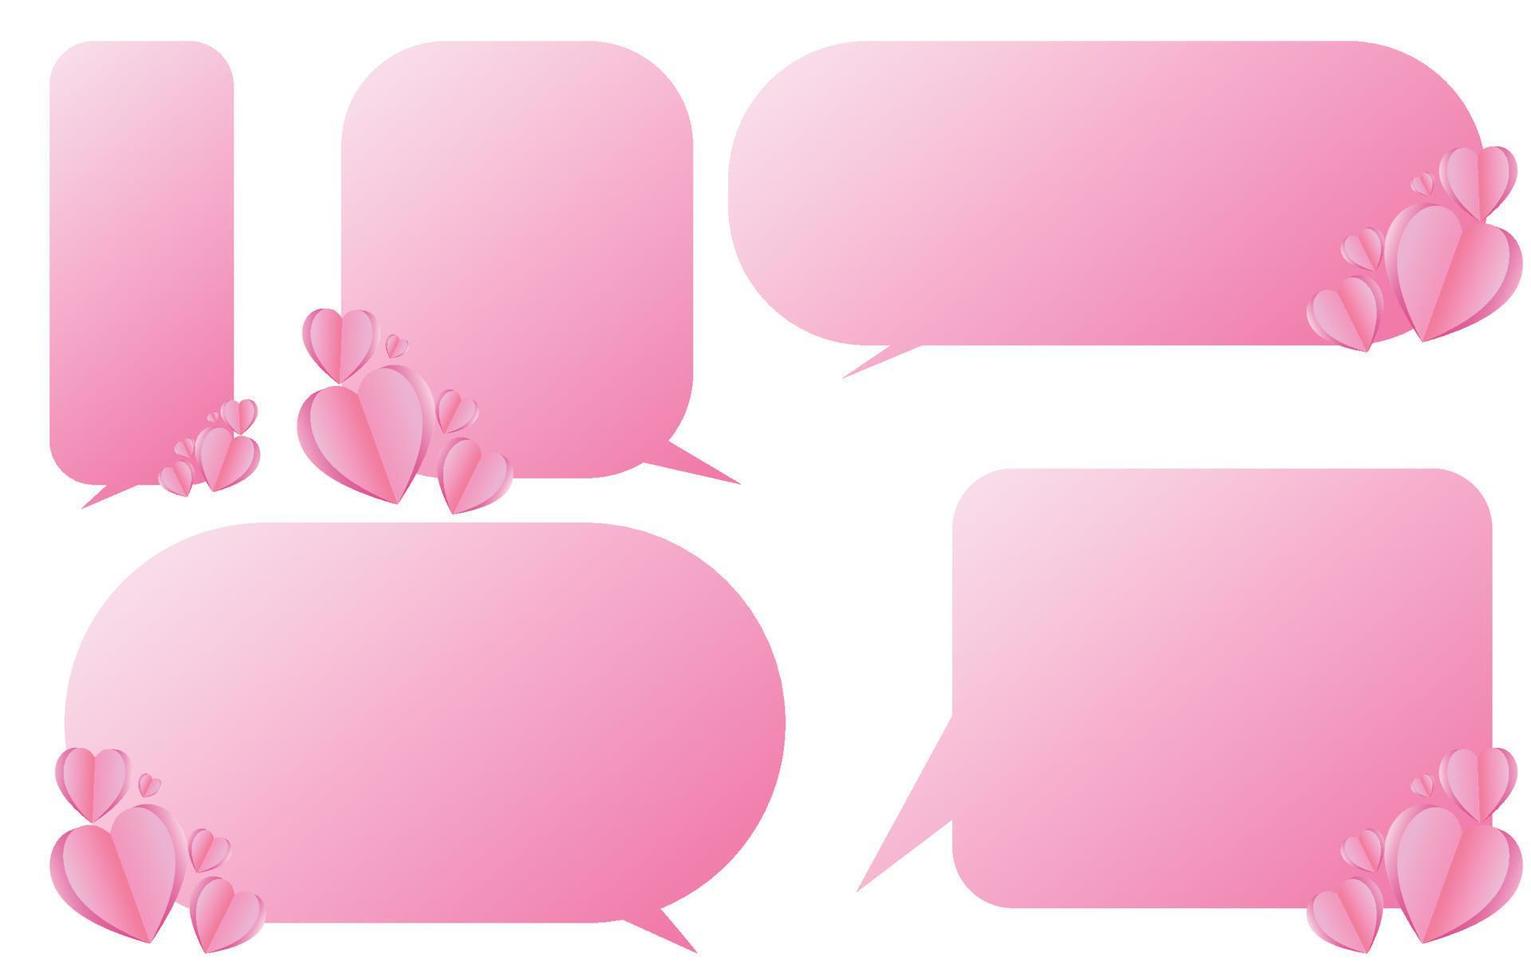 Reihe von dekorativen rosa Sprechblasen mit Herzen, sprechende und sprechende Kommunikation und Konversation isoliert auf weißer Vektorgrafik, Valentinstag-Konzept vektor